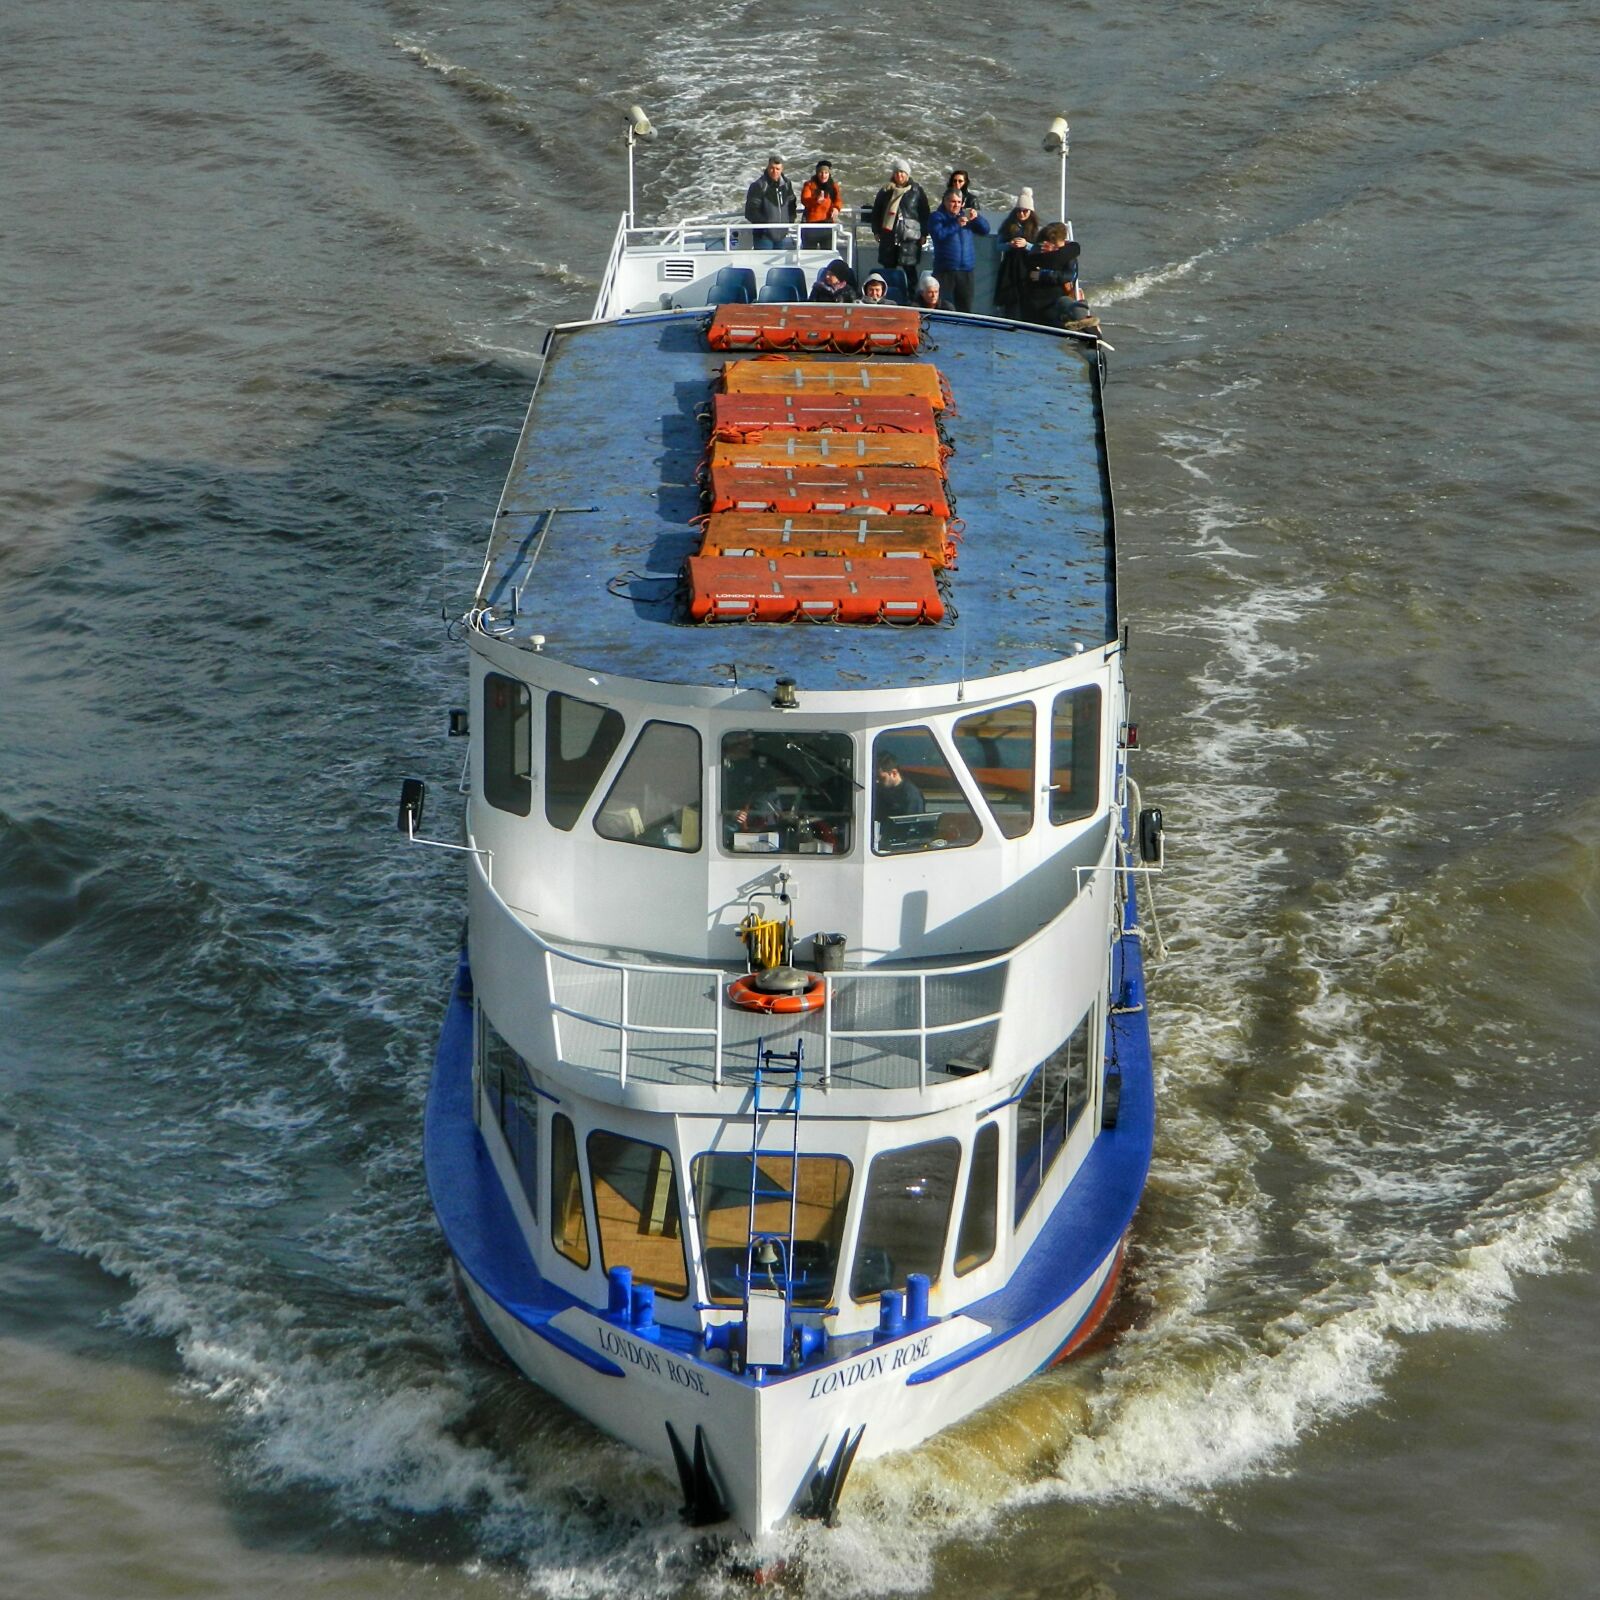 Nikon Coolpix L120 sample photo. Boat, sailing, ship photography